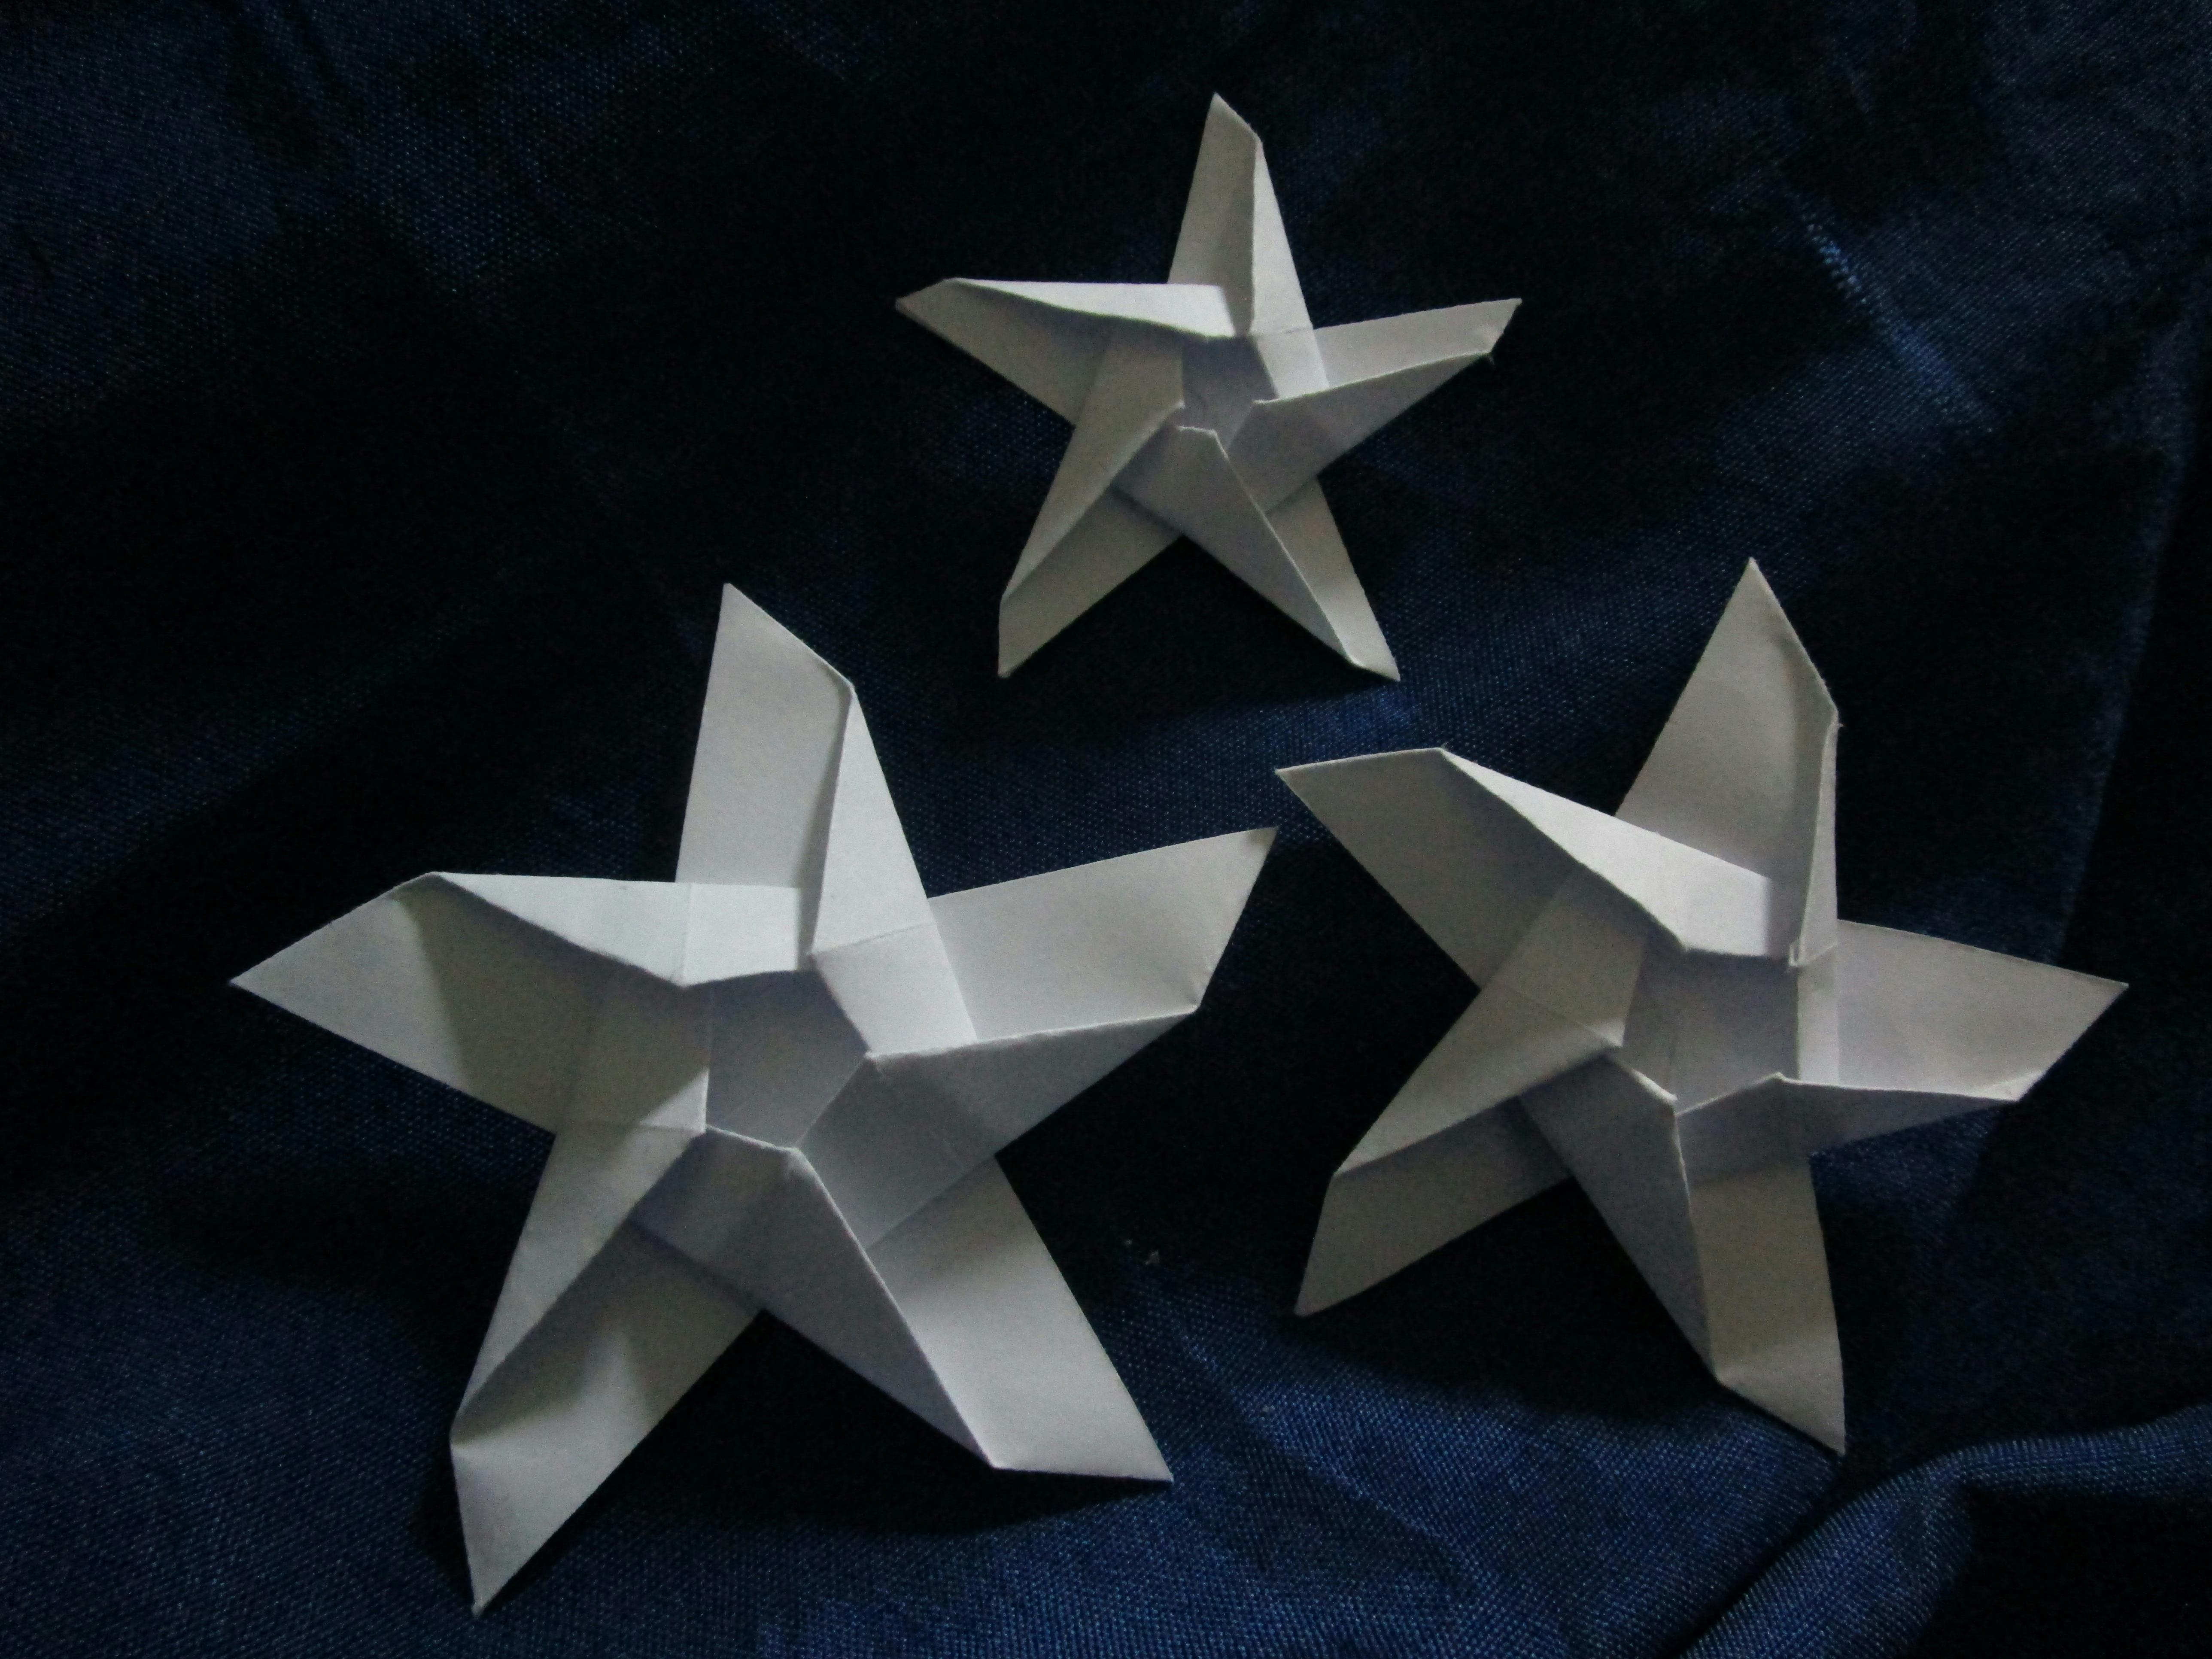 Free stock photo of origami star stars paper art pinwheel